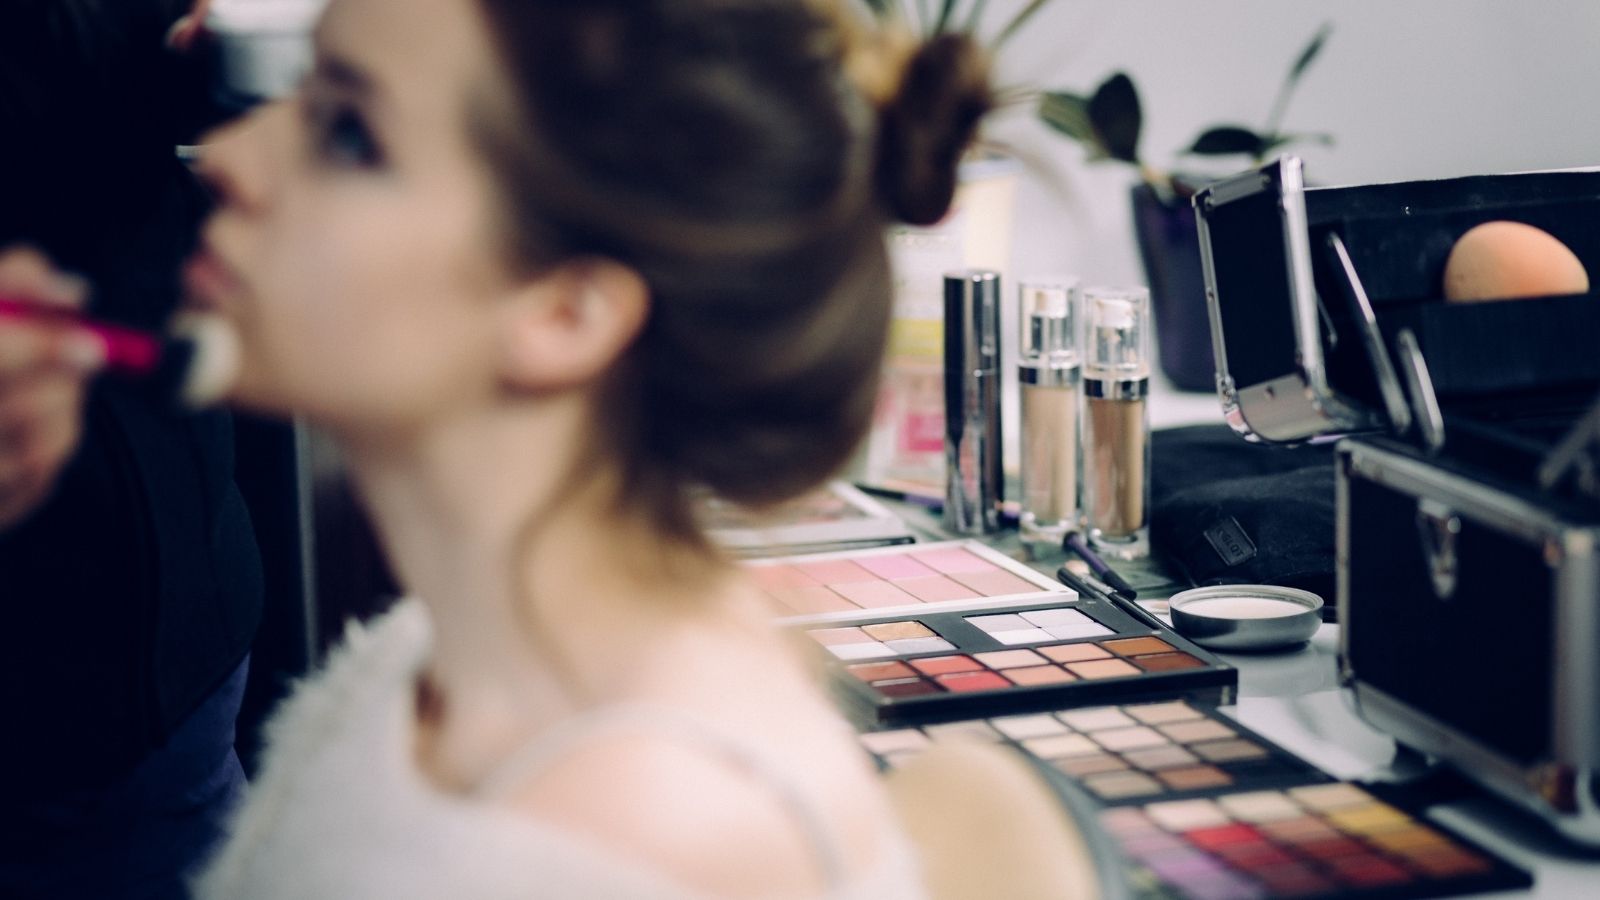 Prognozy dla rynku kosmetycznego w Polsce Prognozy mediarun drug store